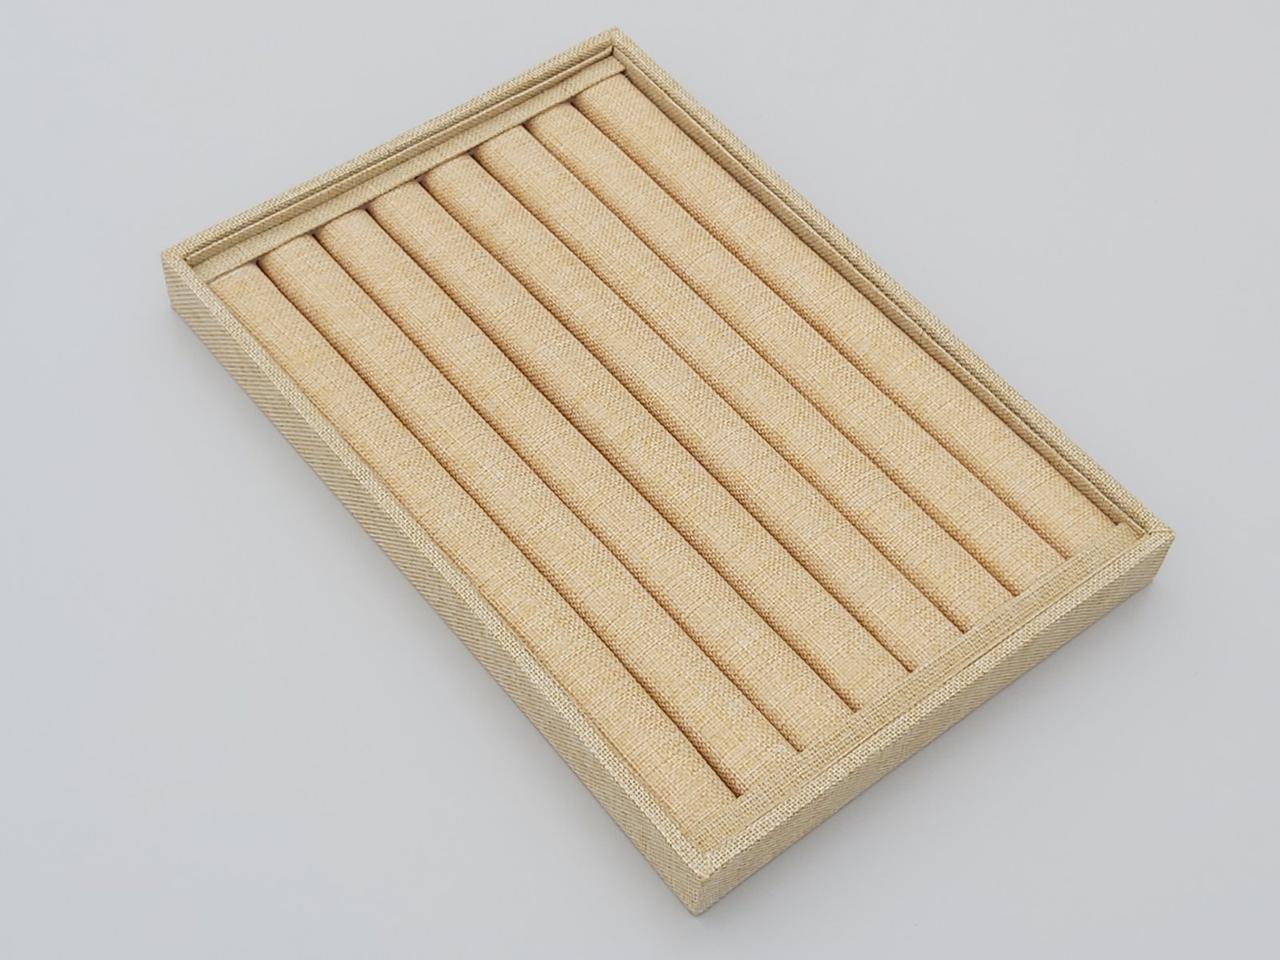 Планшет-вітрина для кілець та сережок пшеничного кольору (лен), ширина 35 см